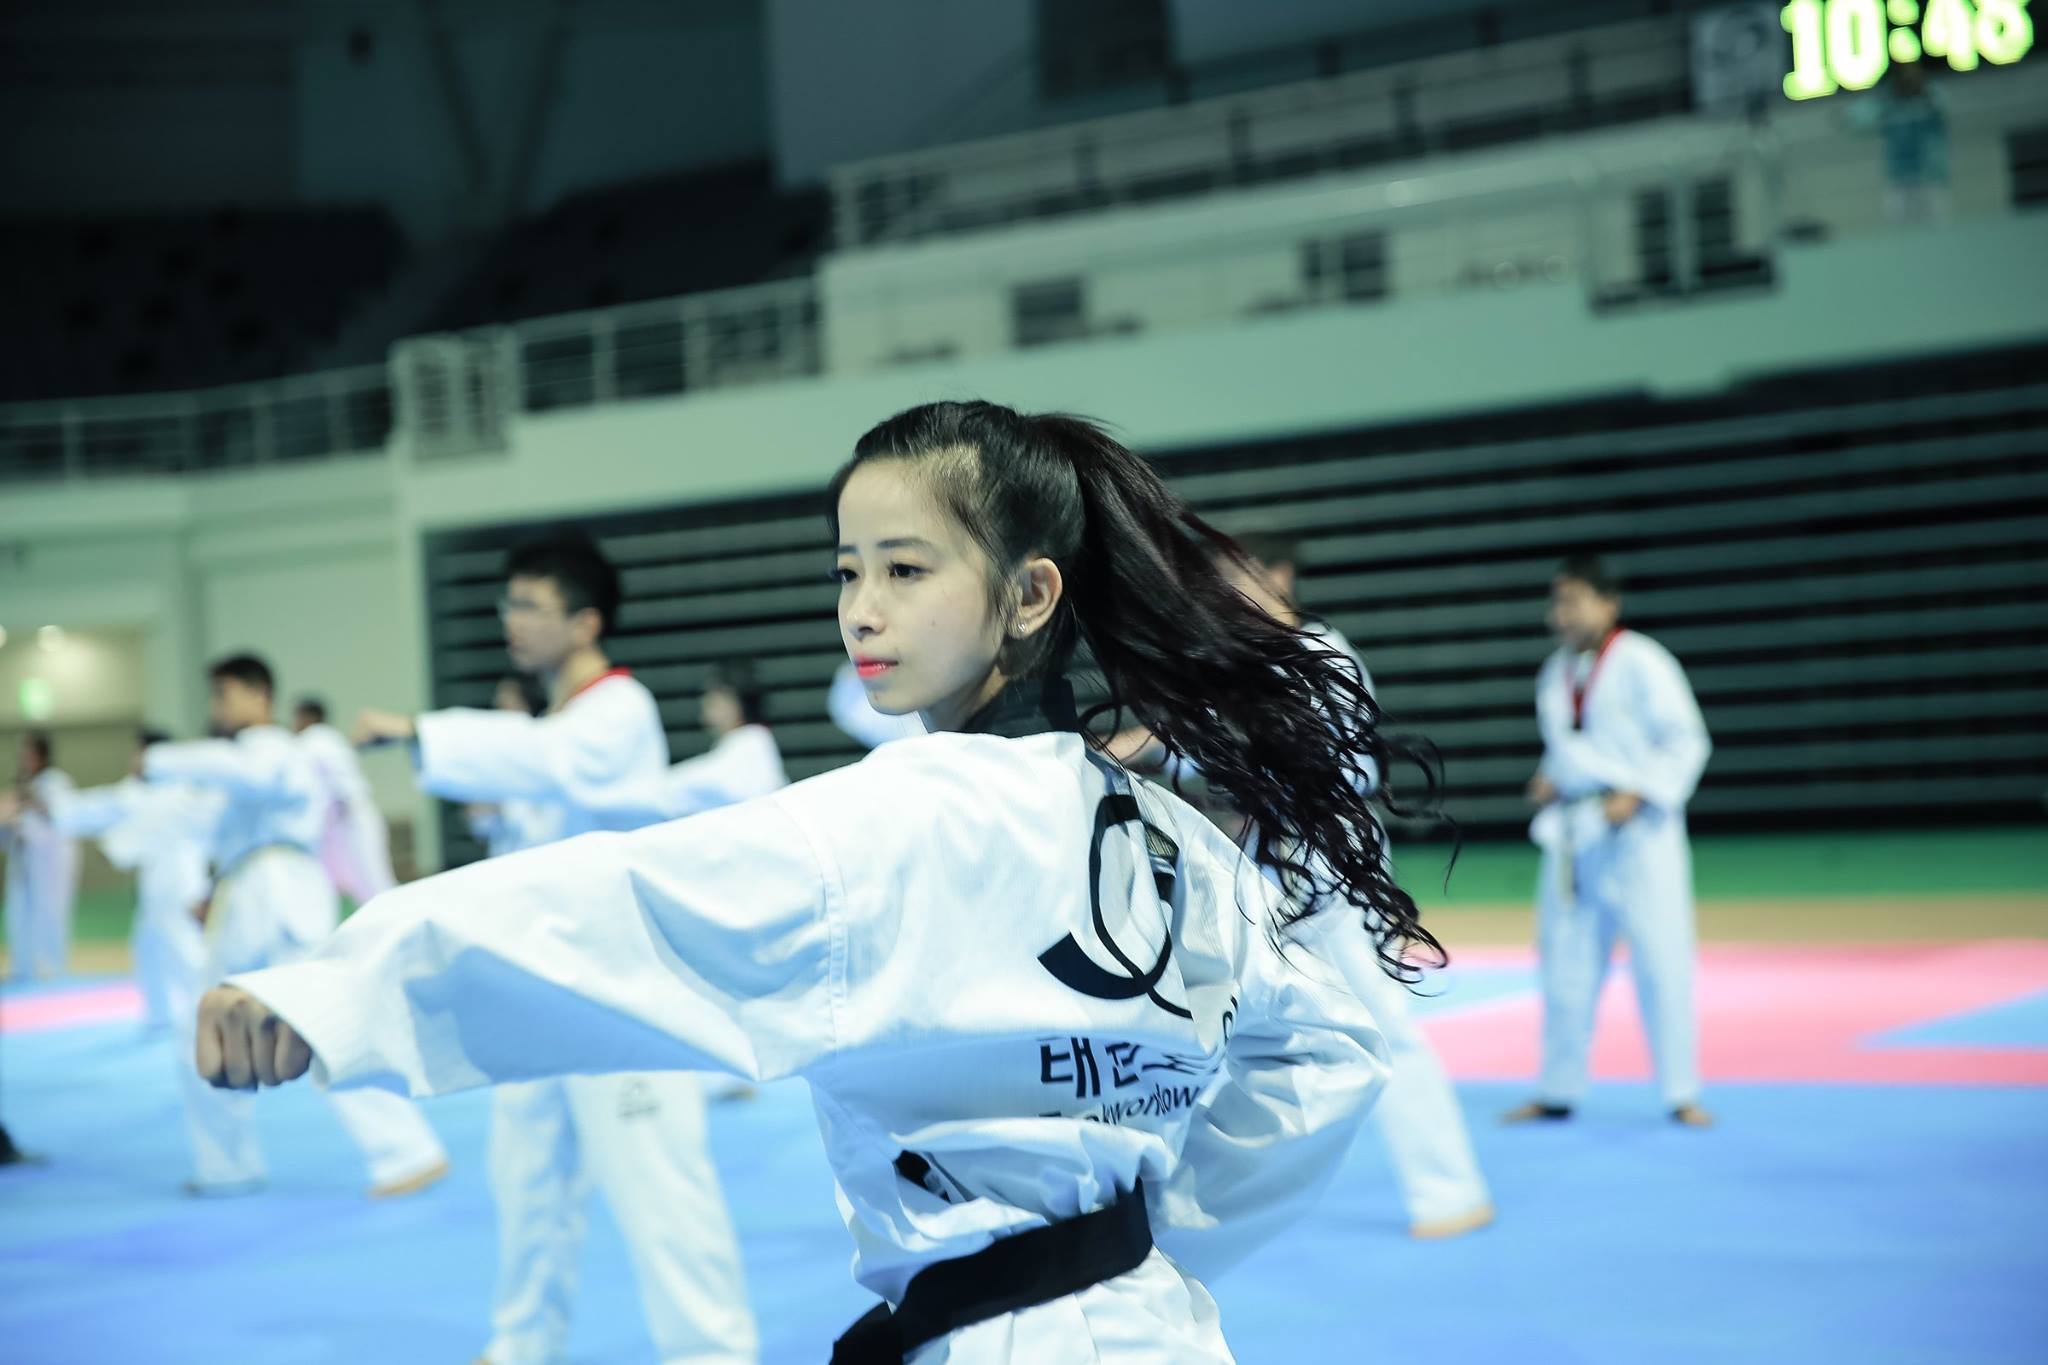 Taekwondo Võ Karate Dây Nịt  Ảnh miễn phí trên Pixabay  Pixabay